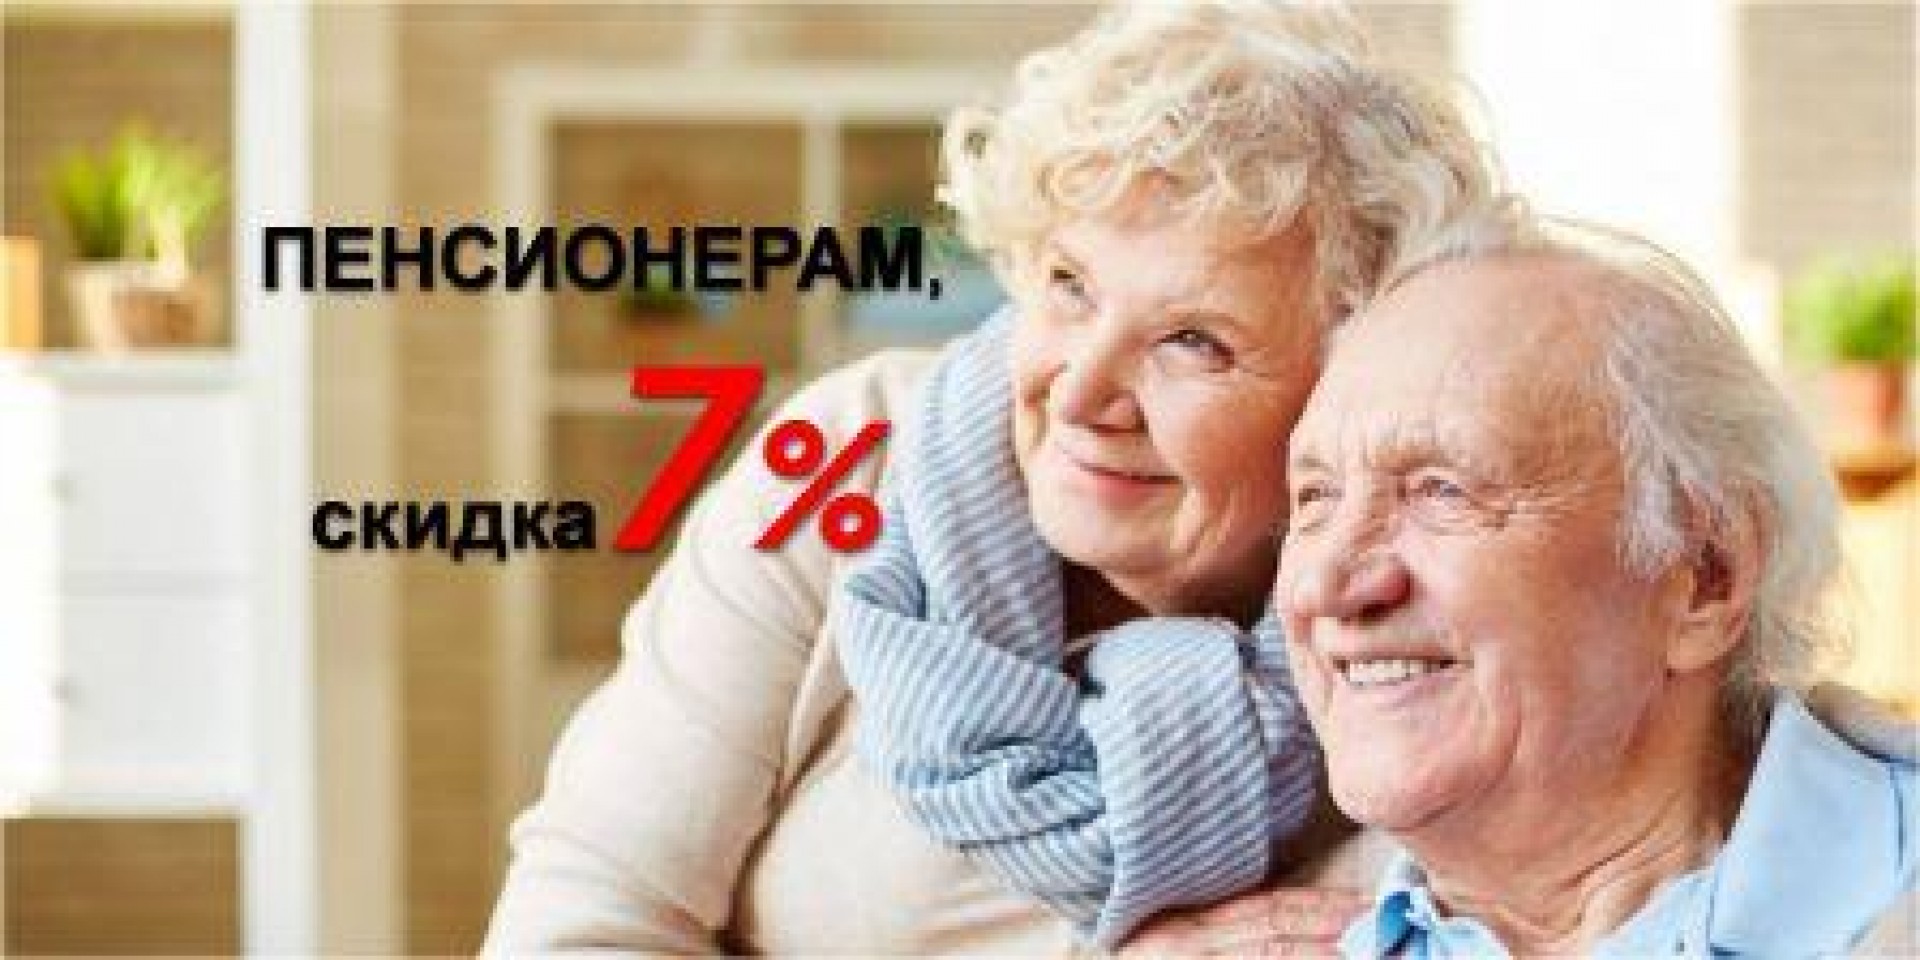 Скидка для пенсионеров 7%